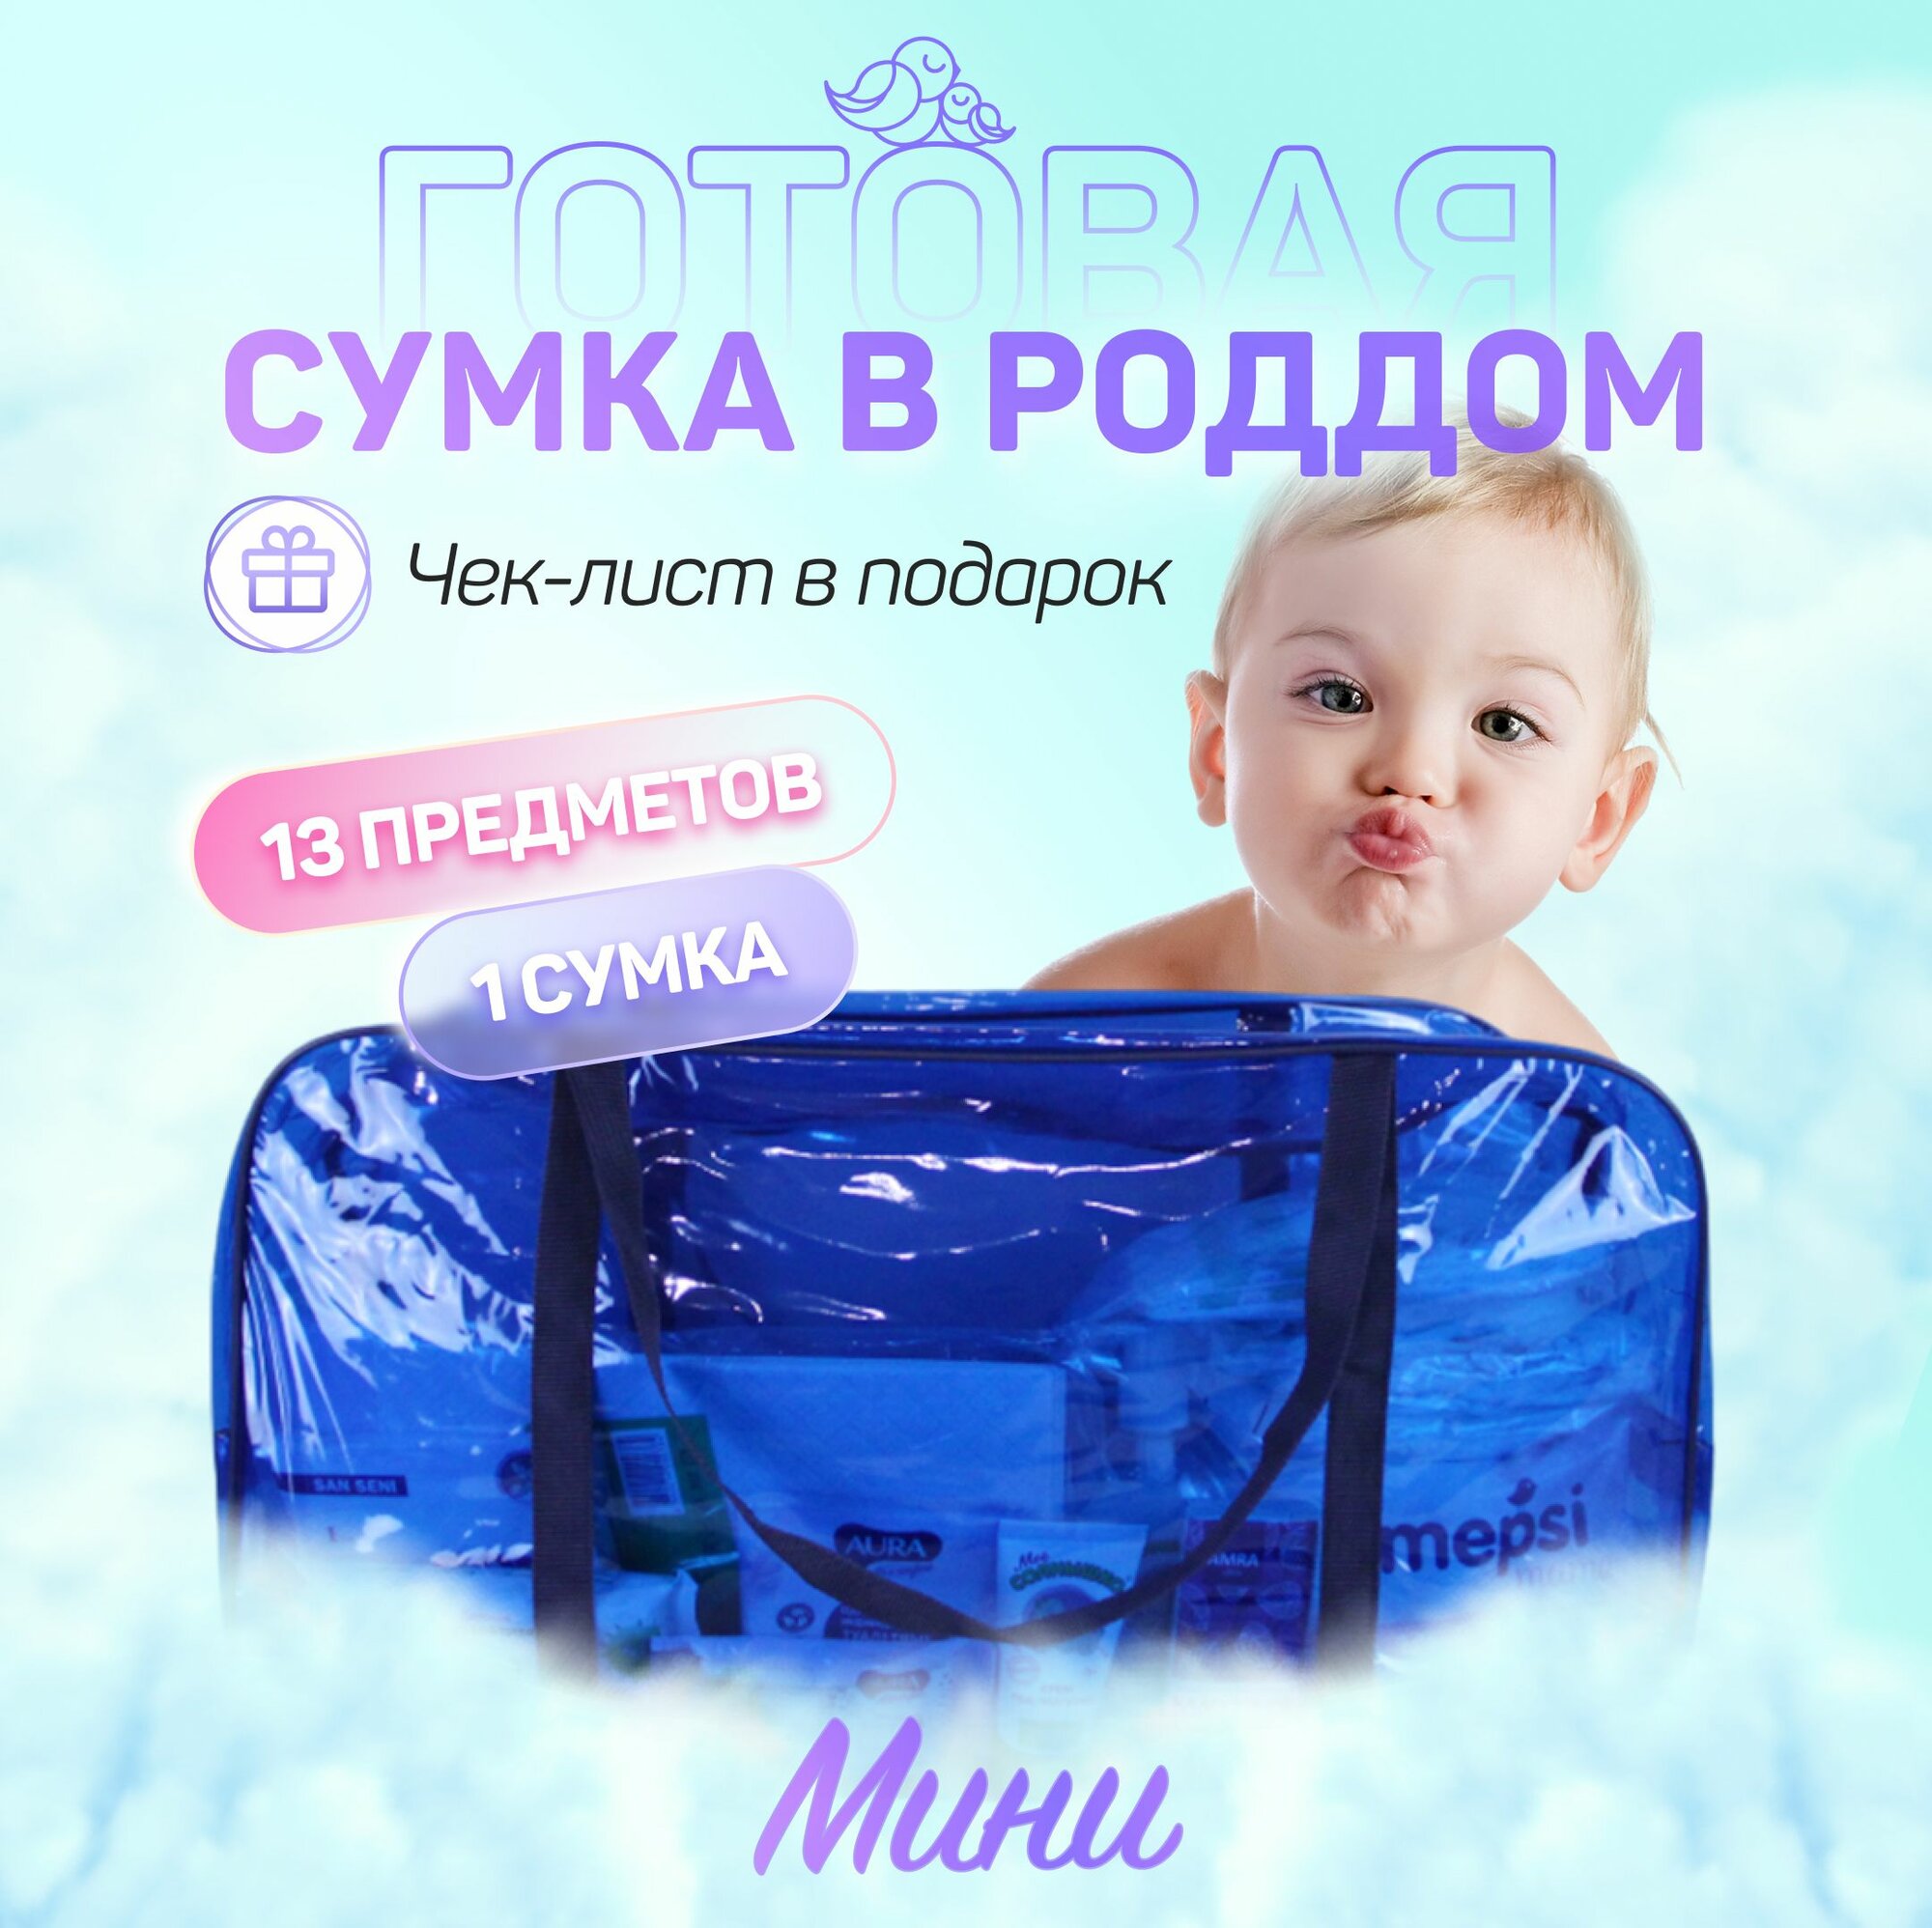 Сумка в роддом готовая для мамы и малыша с наполнением, 13 предметов + 1 сумка, комплектация "Мини"